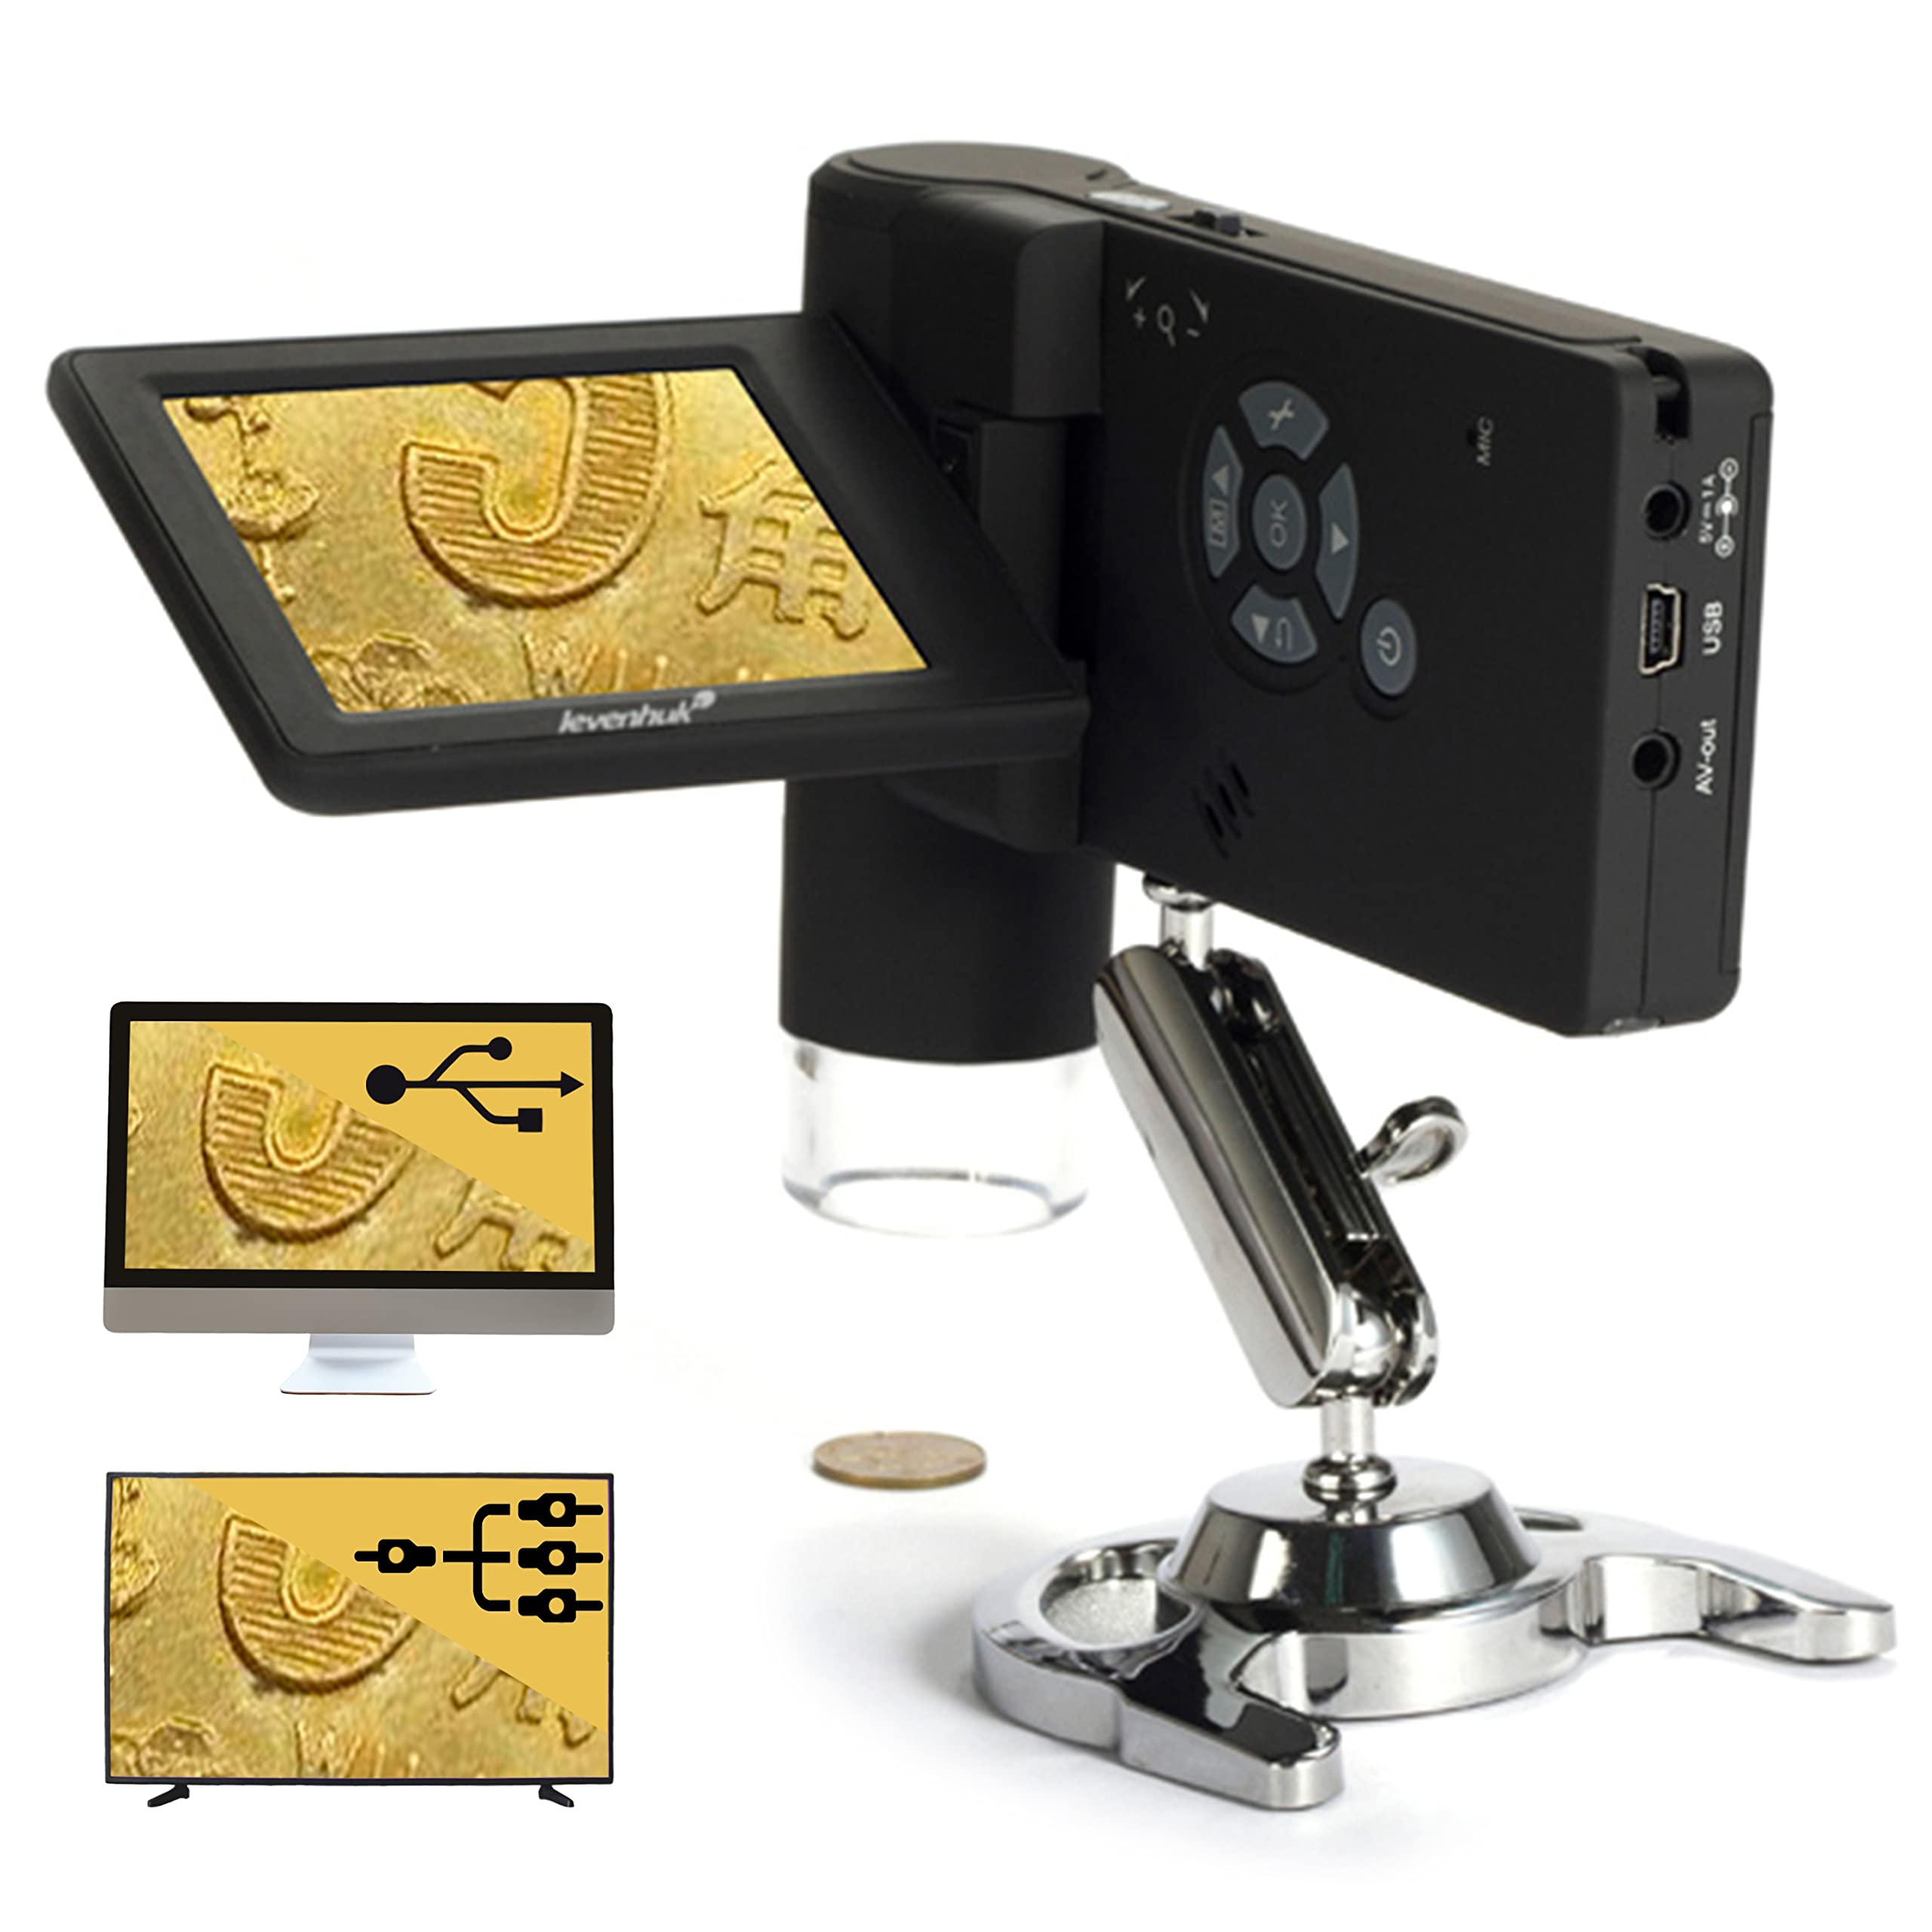 Levenhuk DTX 500 Mobi Tragbares Digitales USB-Mikroskop (20- bis 500-Fach) mit LCD-Display zur Beobachtung Beliebiger Oberflächen, Sowohl zu Hause Als Auch im Freien